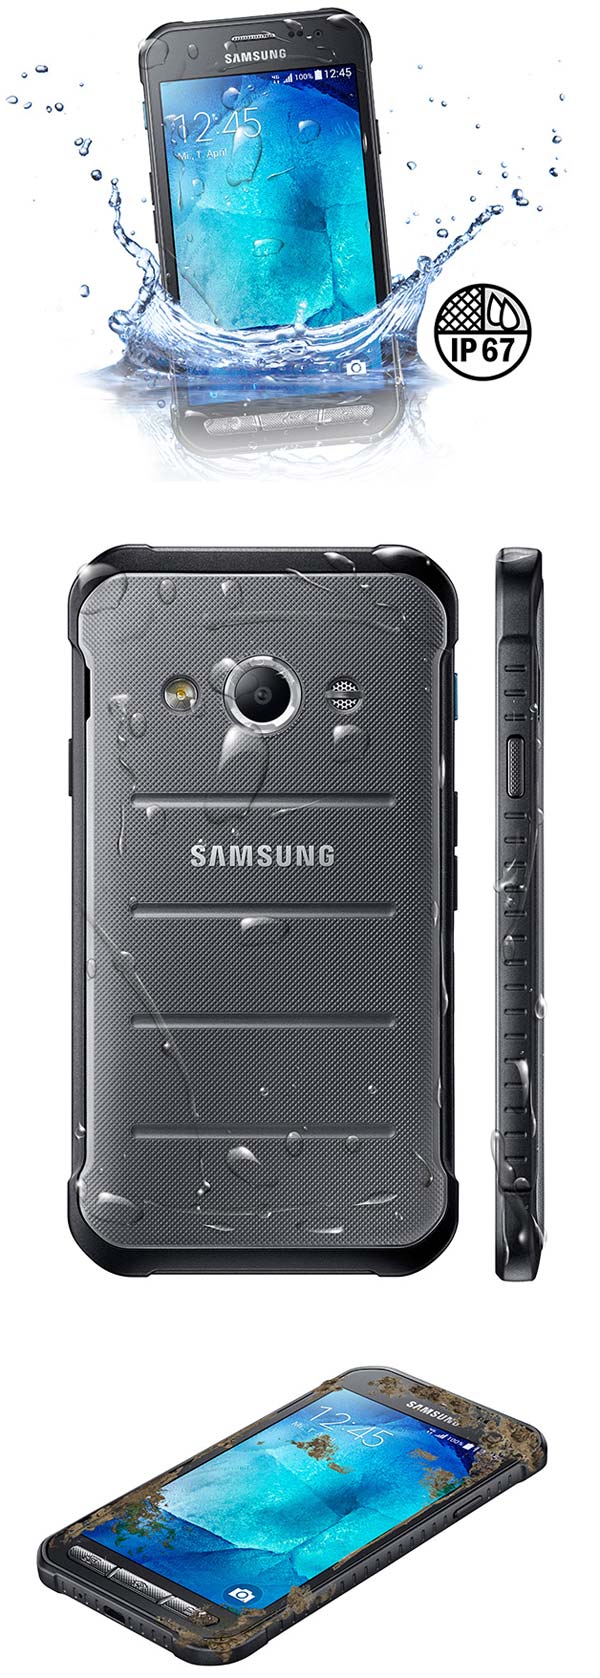 Официальные фото Samsung Galaxy Xcover 3